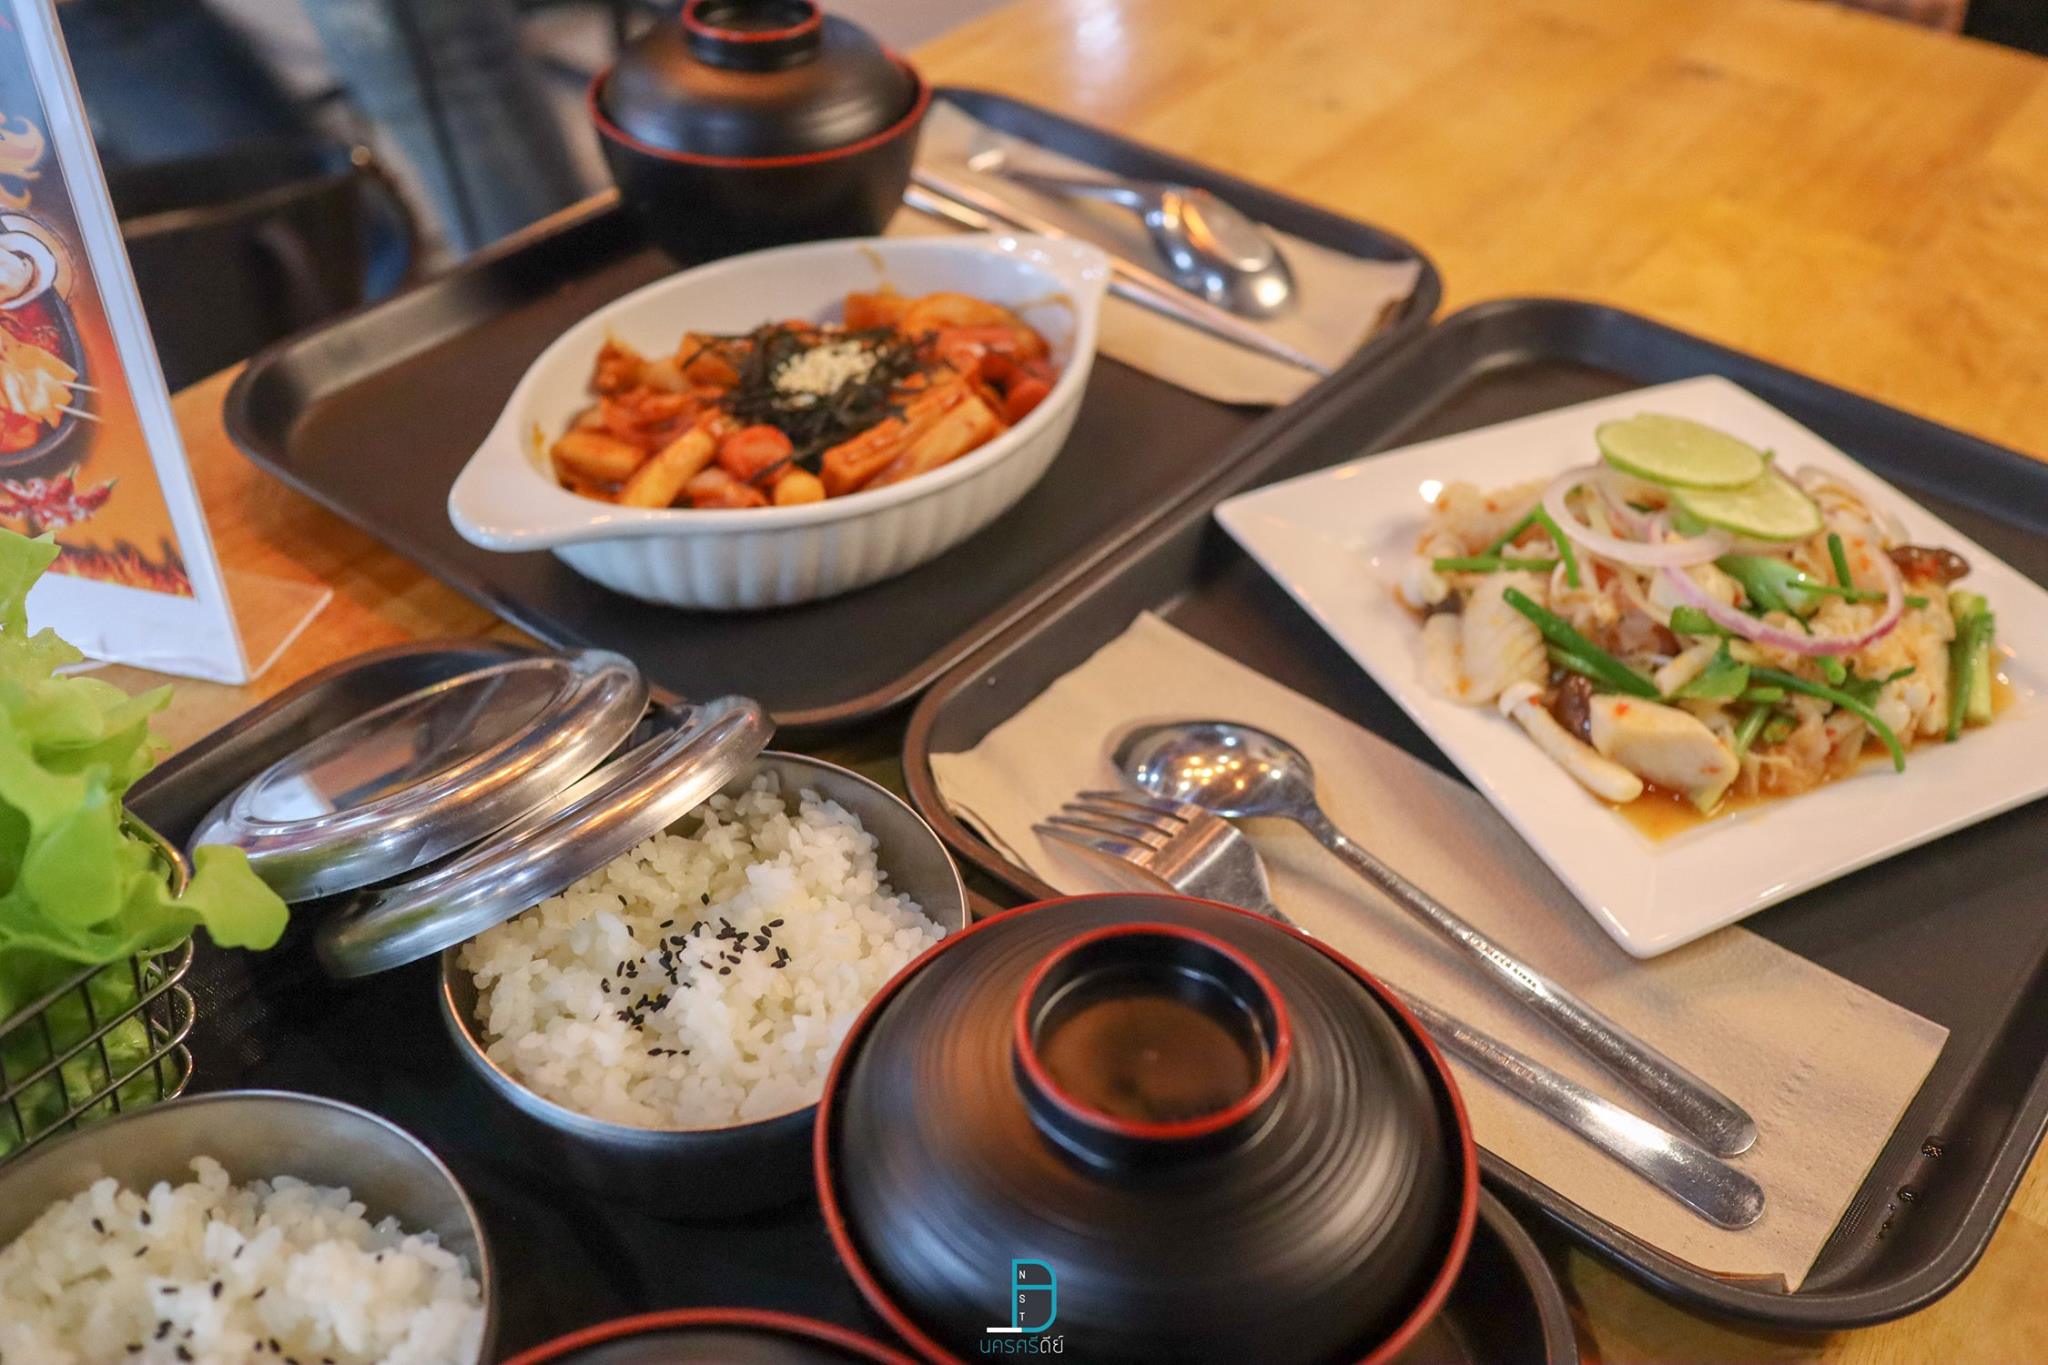   อาหารเกาหลี,ร้านอาหารเกาหลี,อำเภอเมือง,อร่อย,ของกิน,บิงซู,ร้านบิงซู